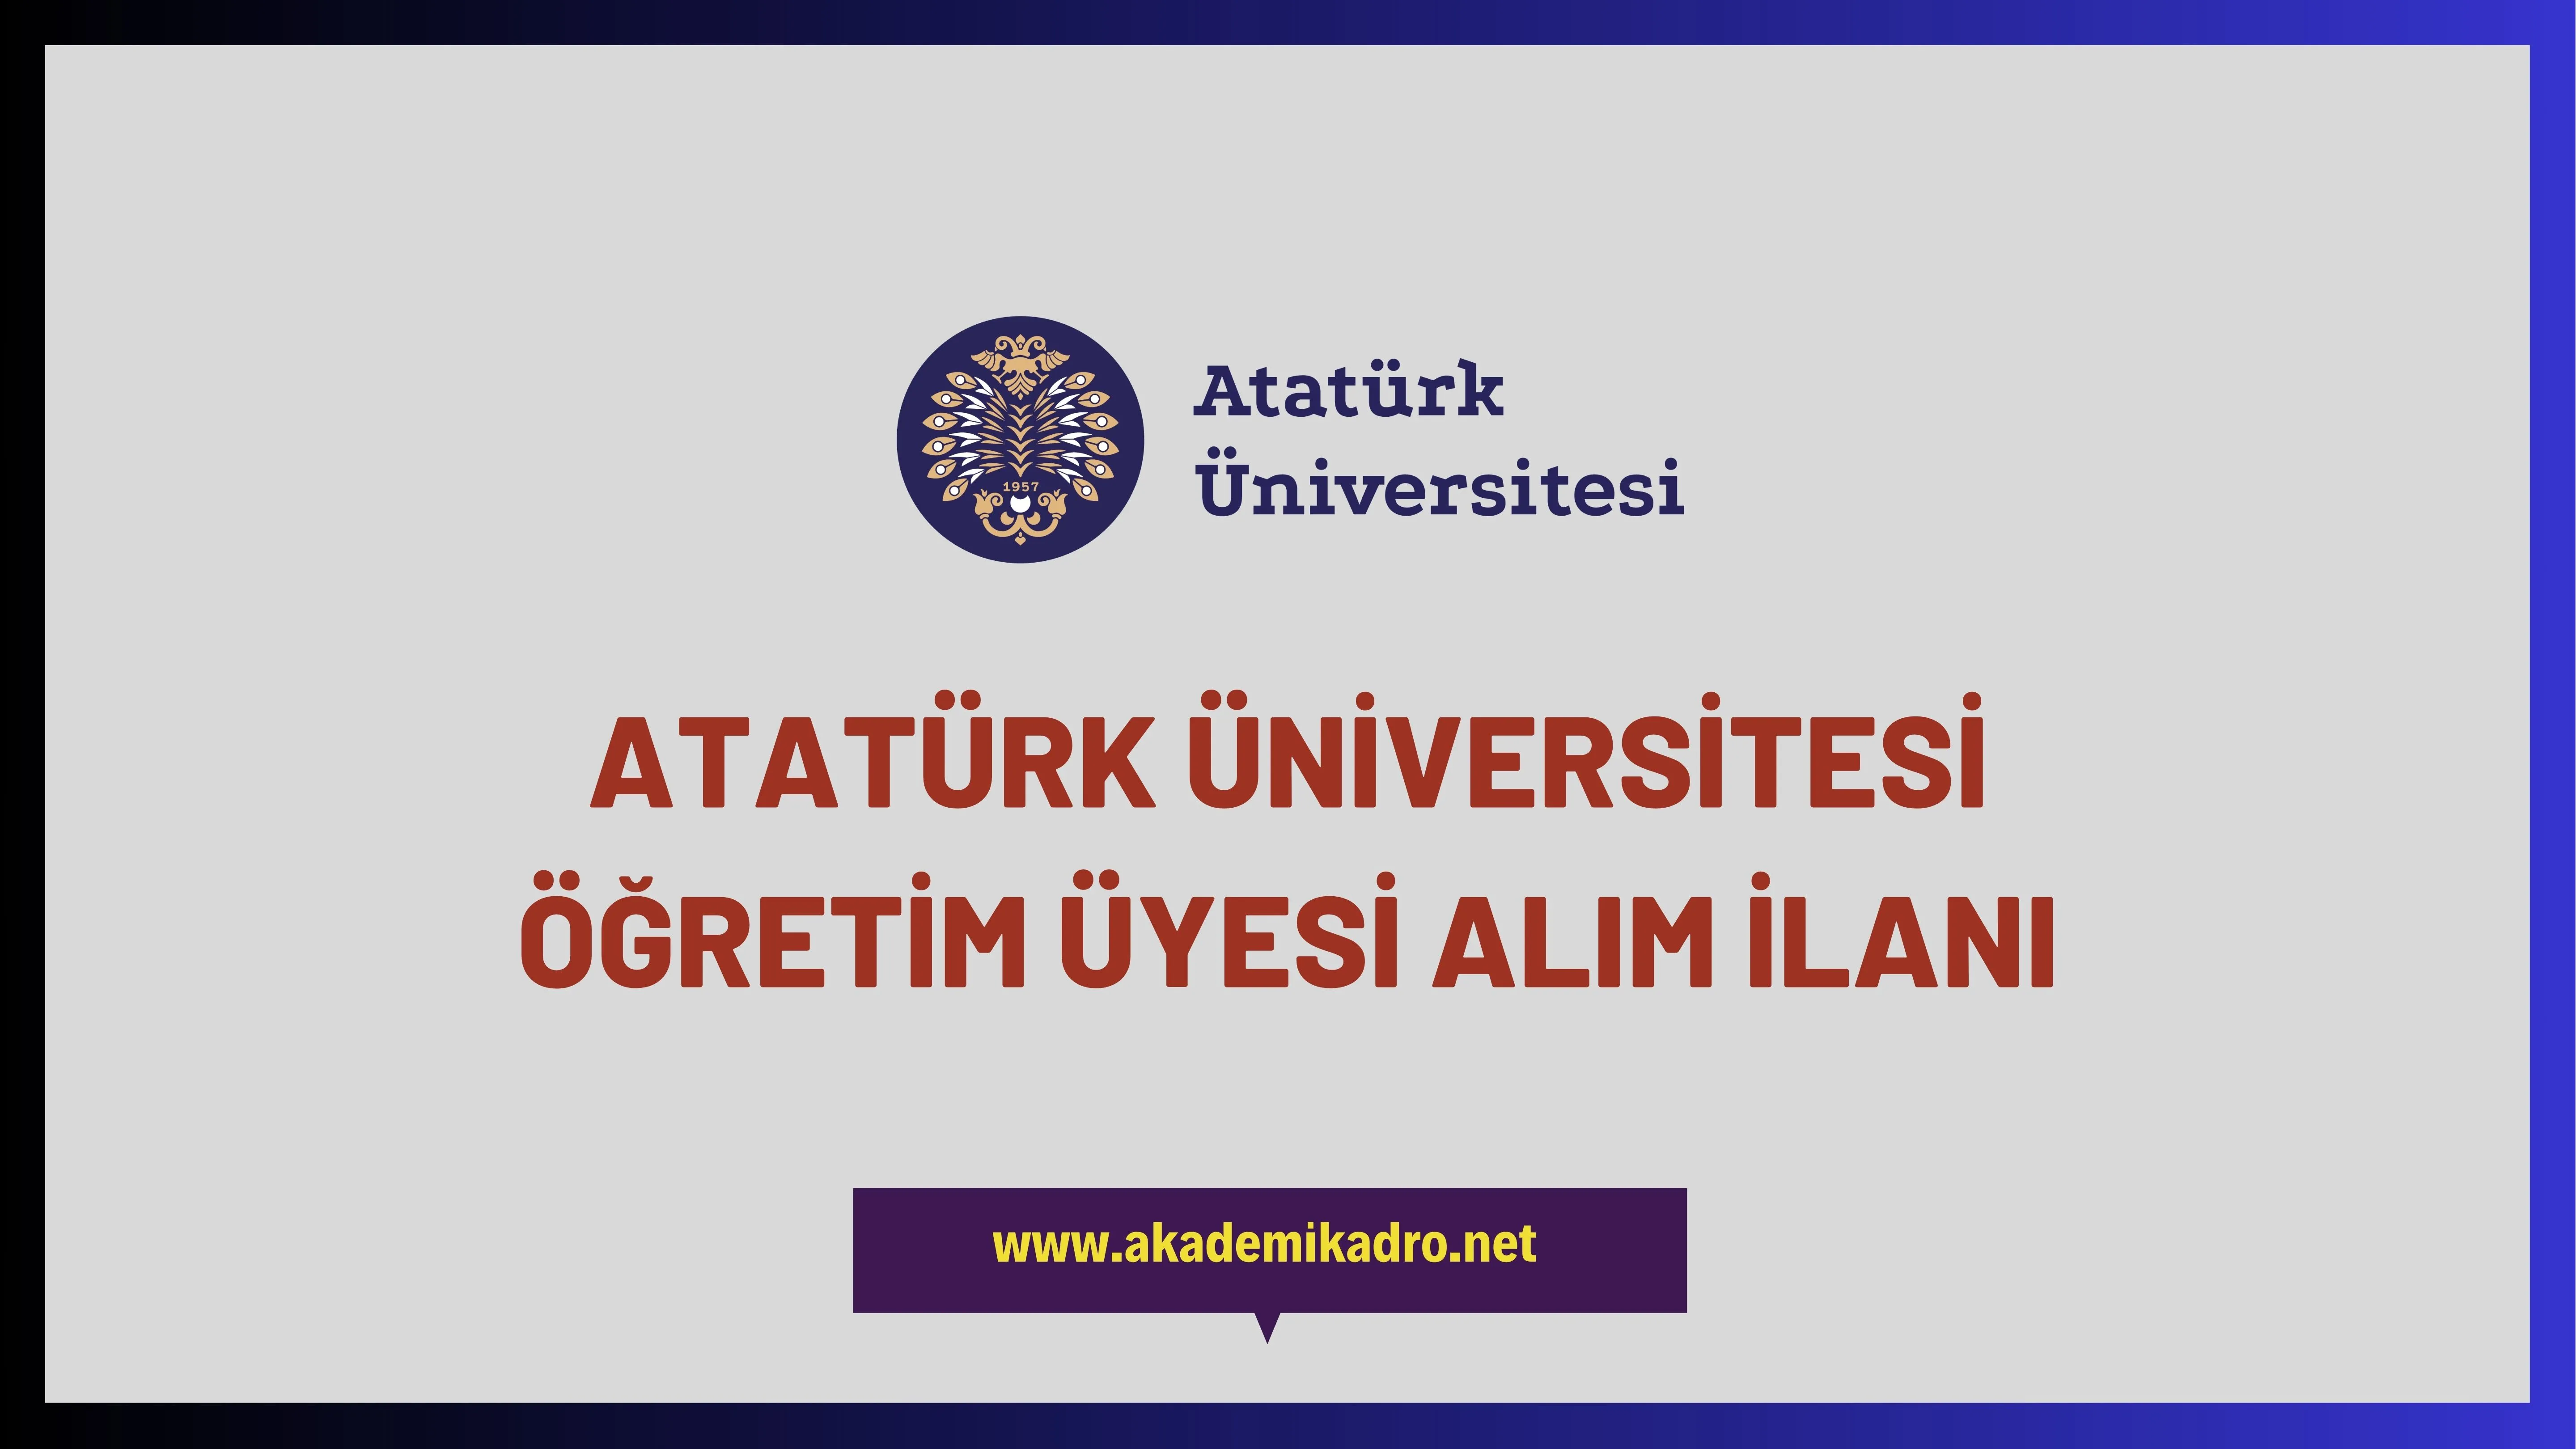 Atatürk Üniversitesi bir çok alandan 36 öğretim üyesi alacak.